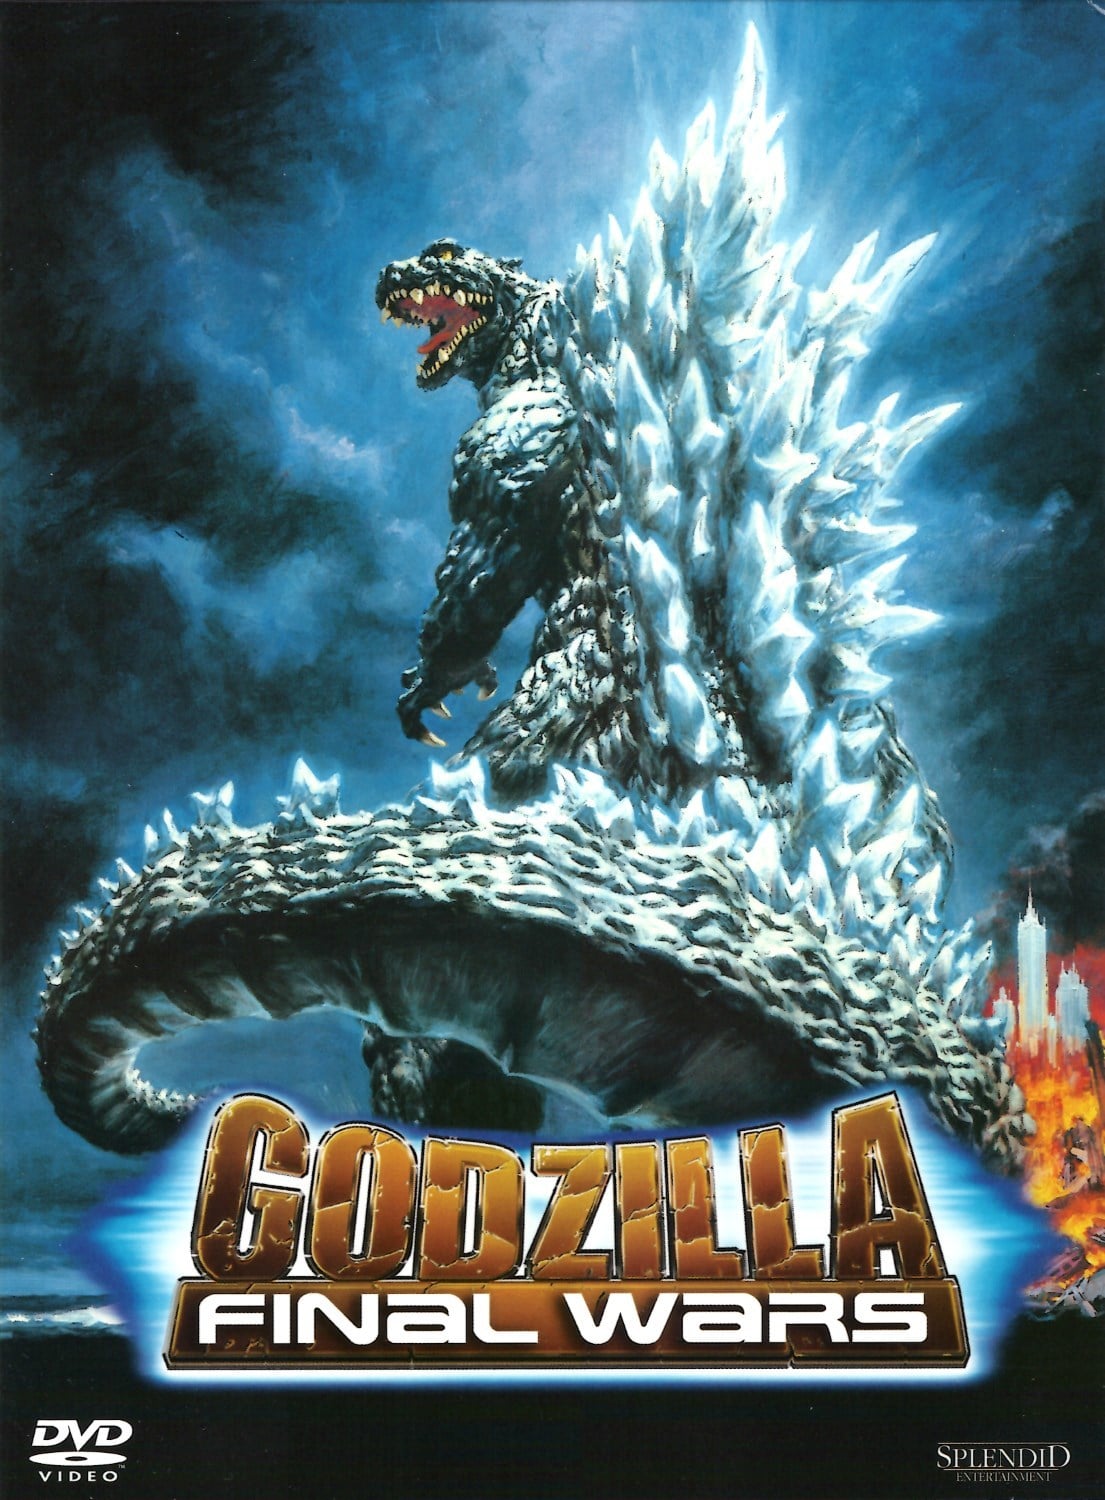 Plakat von "Godzilla: Final Wars"